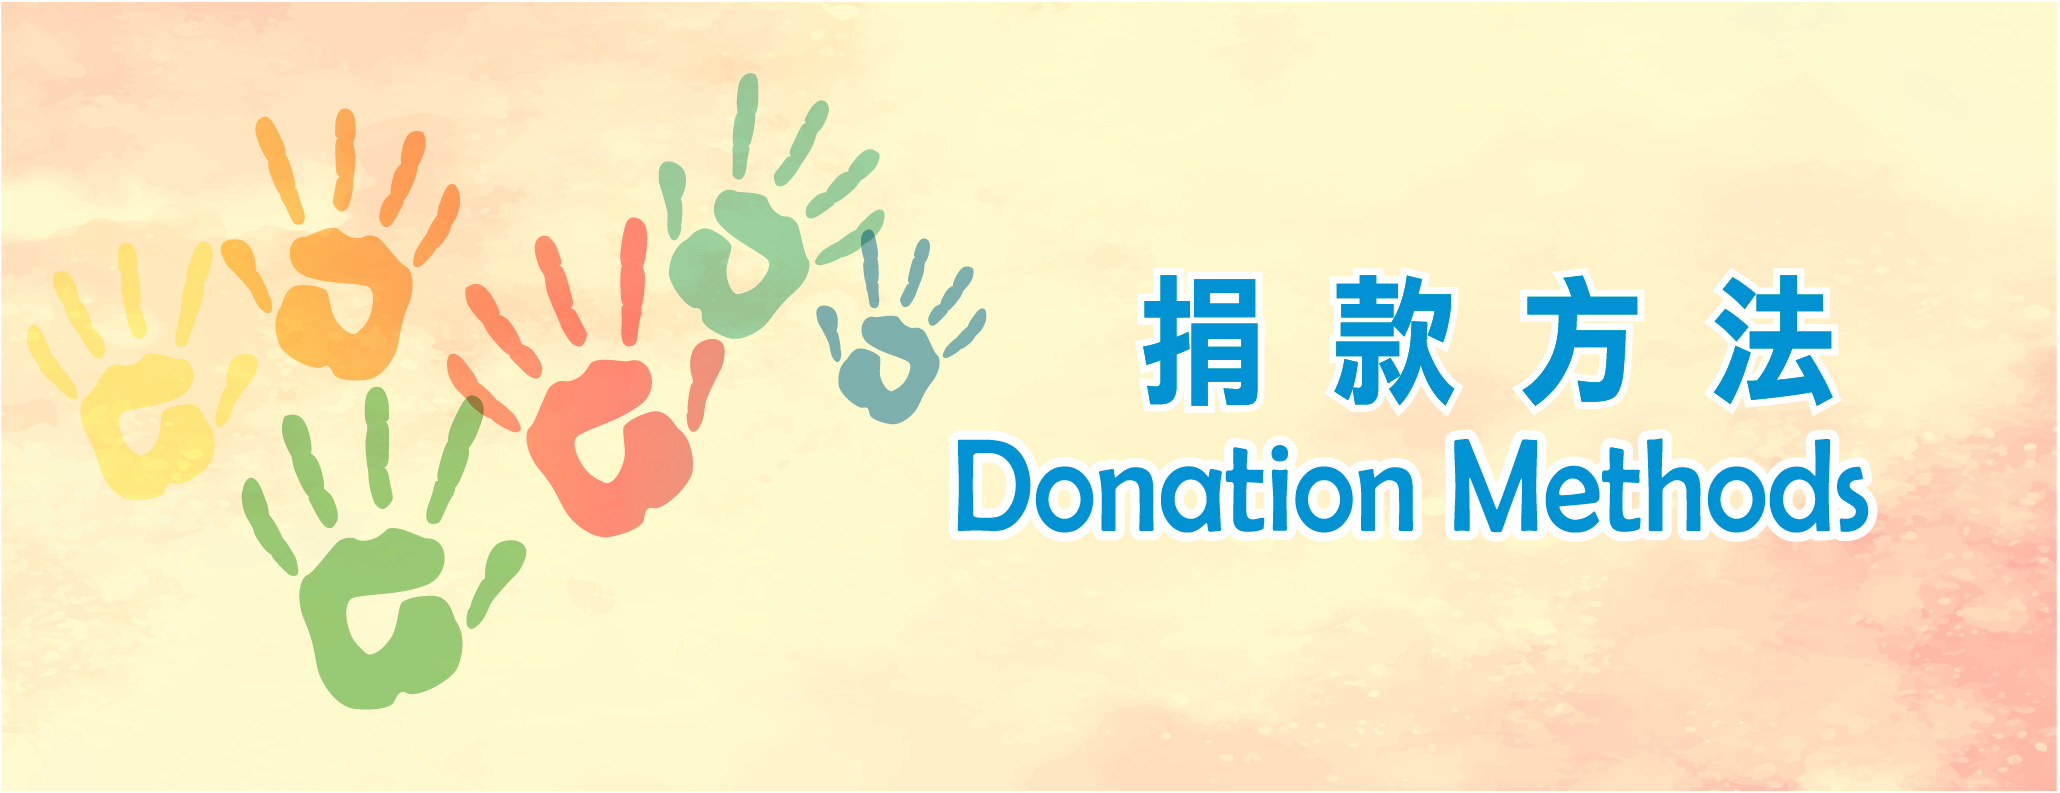 Methods：Donation / Volunteers